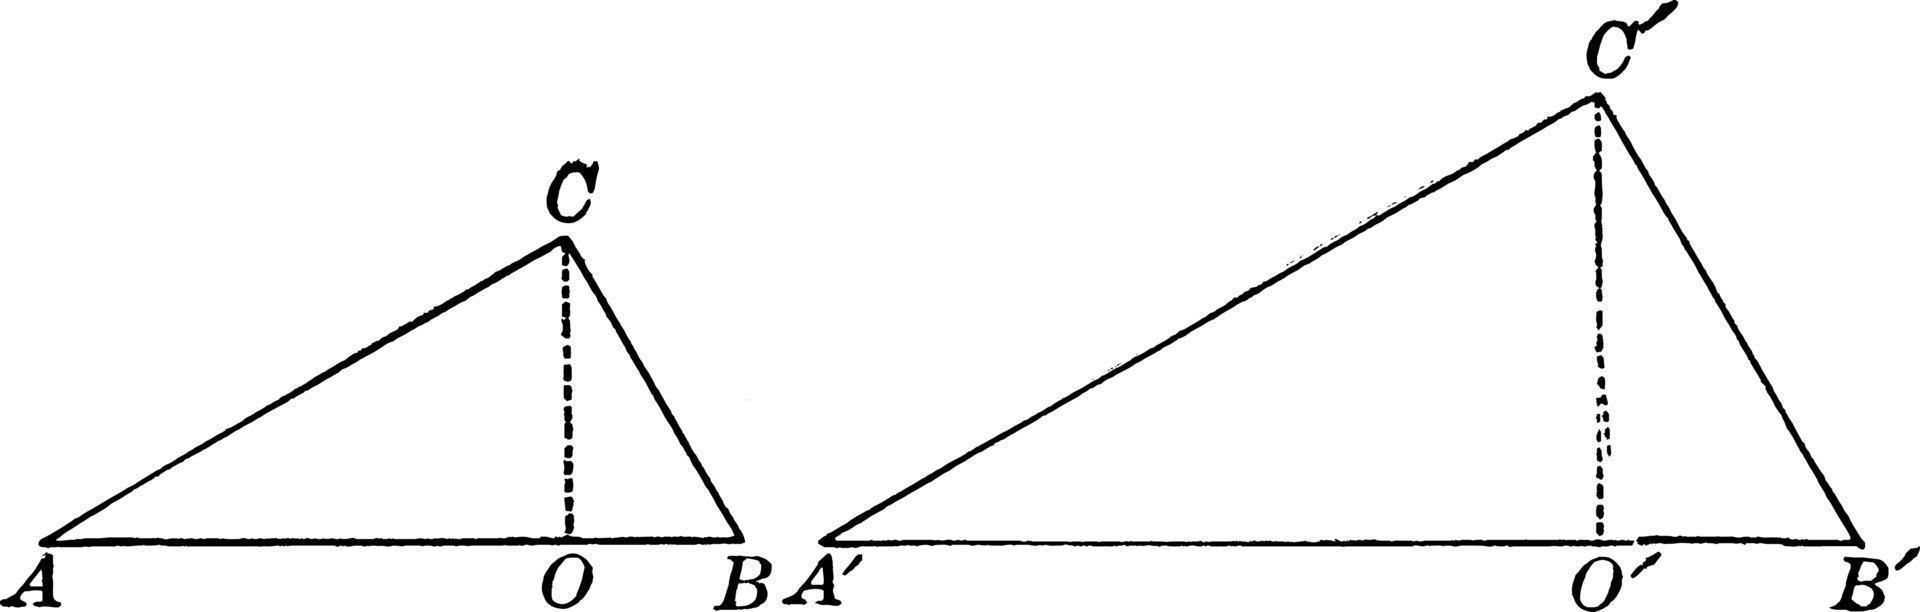 deux triangles, illustration vintage. vecteur